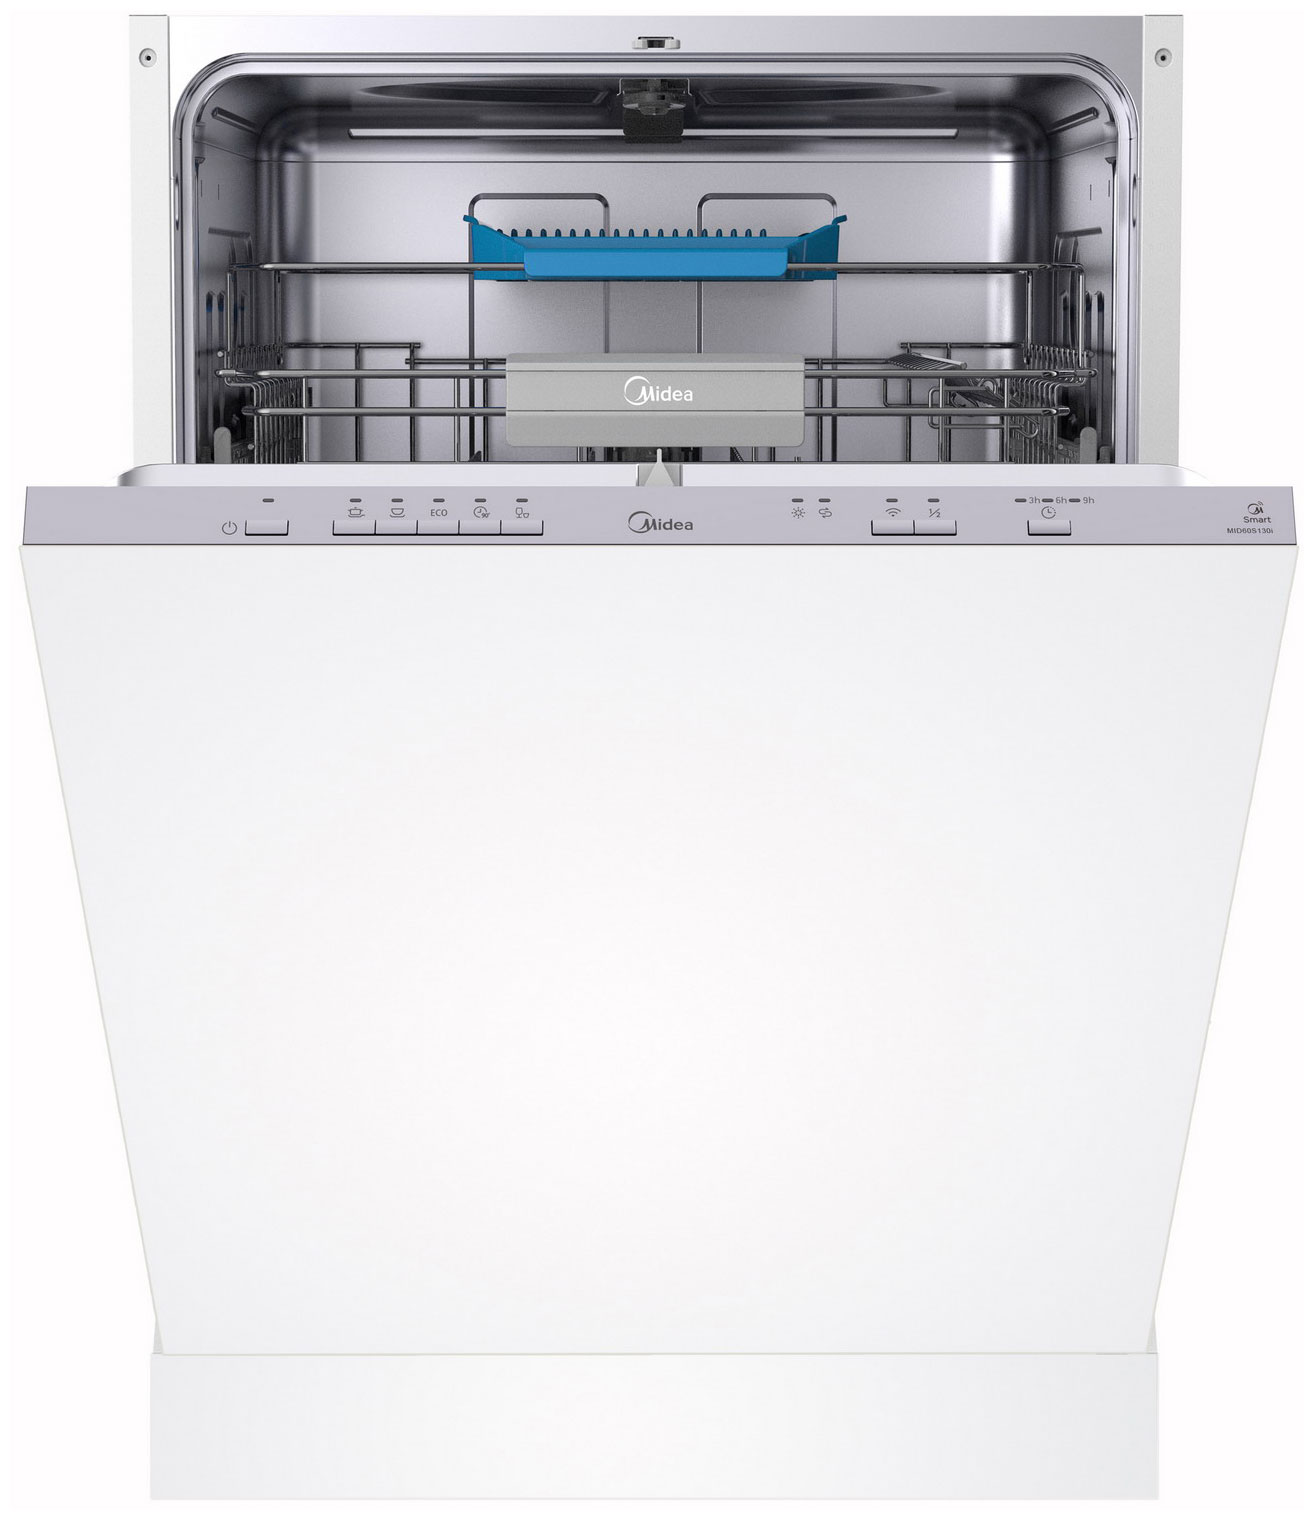 Встраиваемая посудомоечная машина Midea MID60S130i встраиваемая посудомоечная машина midea mid60s140i